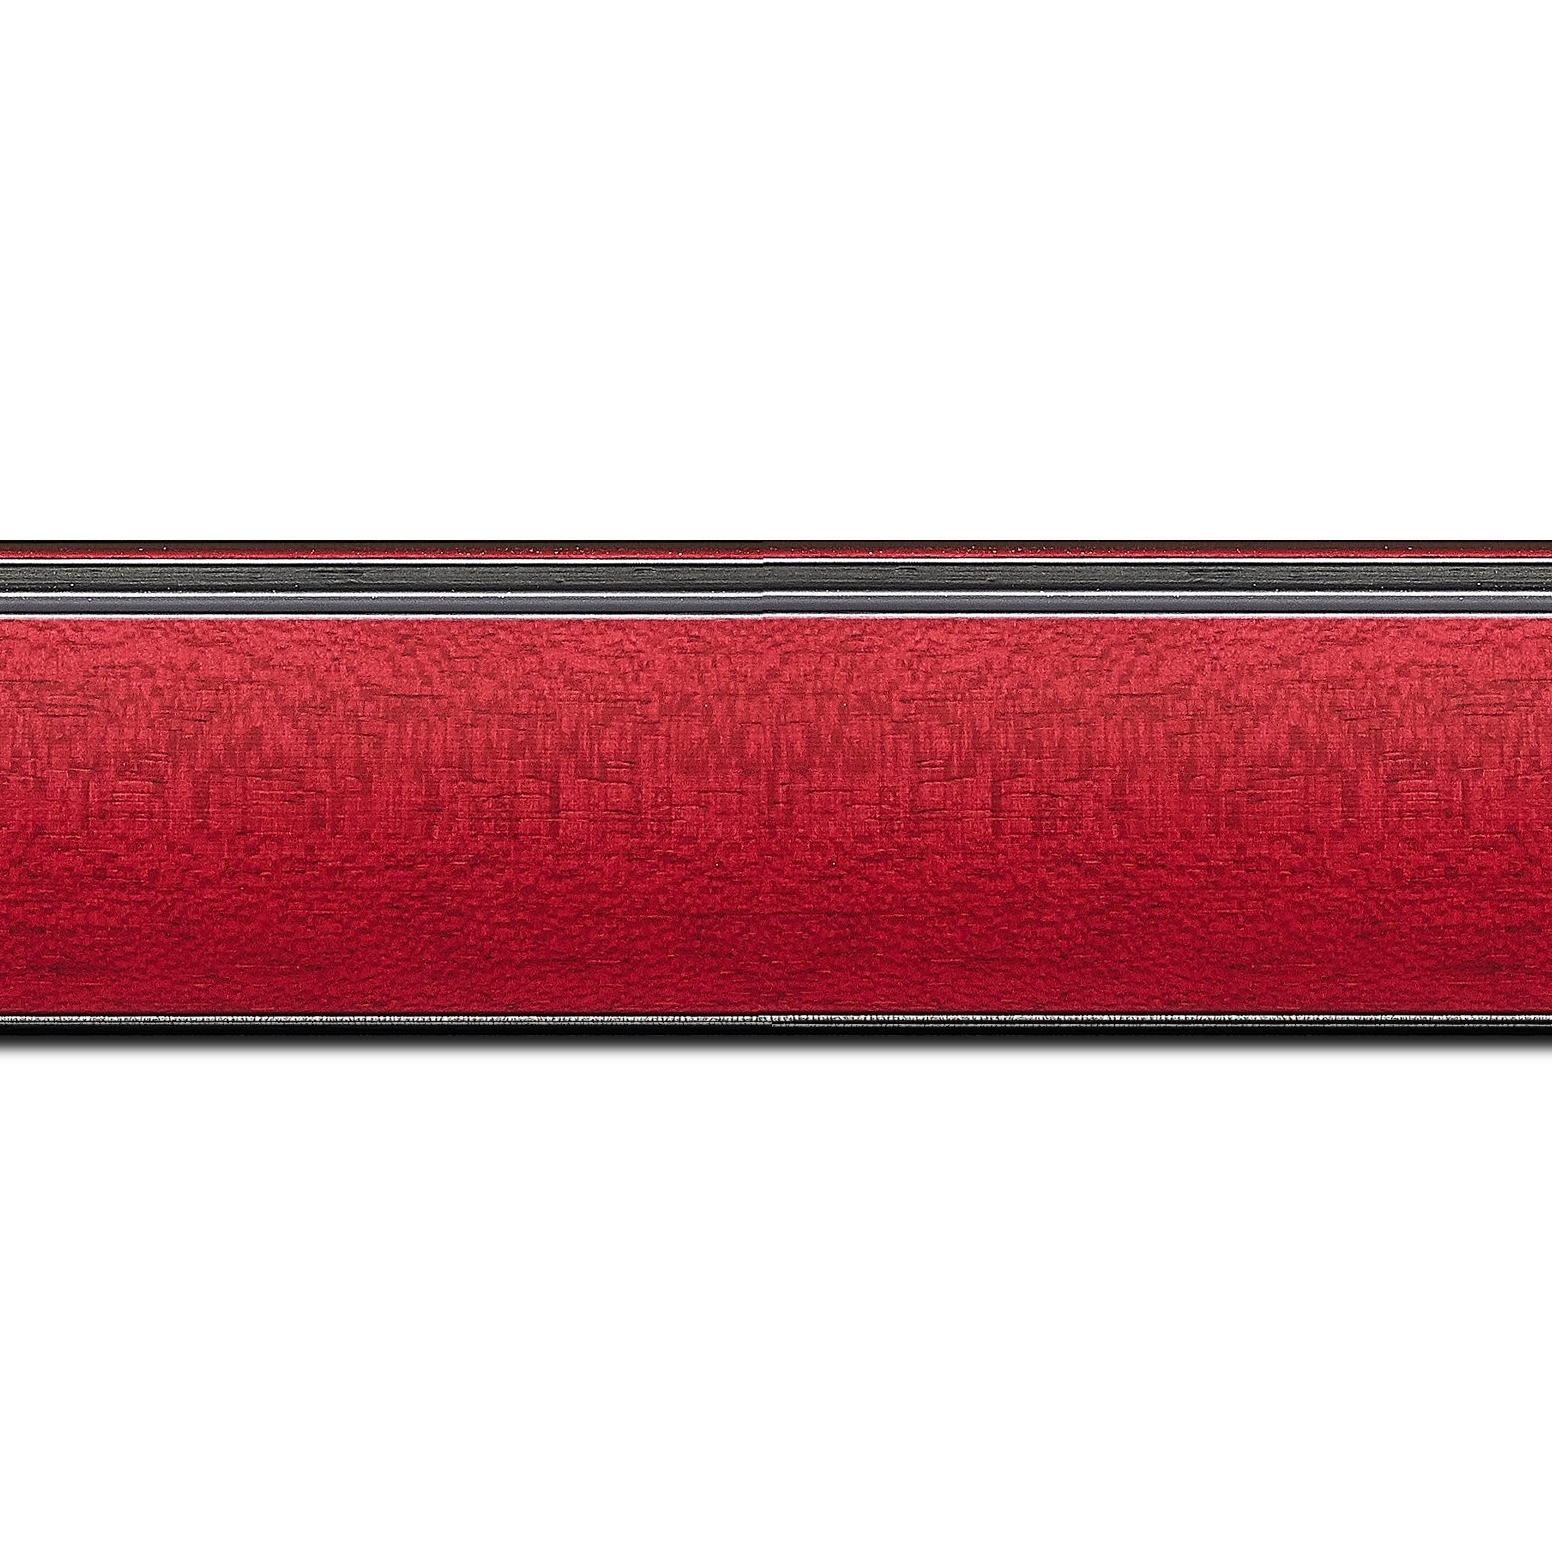 Pack par 12m, bois profil en pente méplat largeur 4.8cm couleur rouge cerise satiné surligné par une gorge extérieure noire : originalité et élégance assurée (longueur baguette pouvant varier entre 2.40m et 3m selon arrivage des bois)